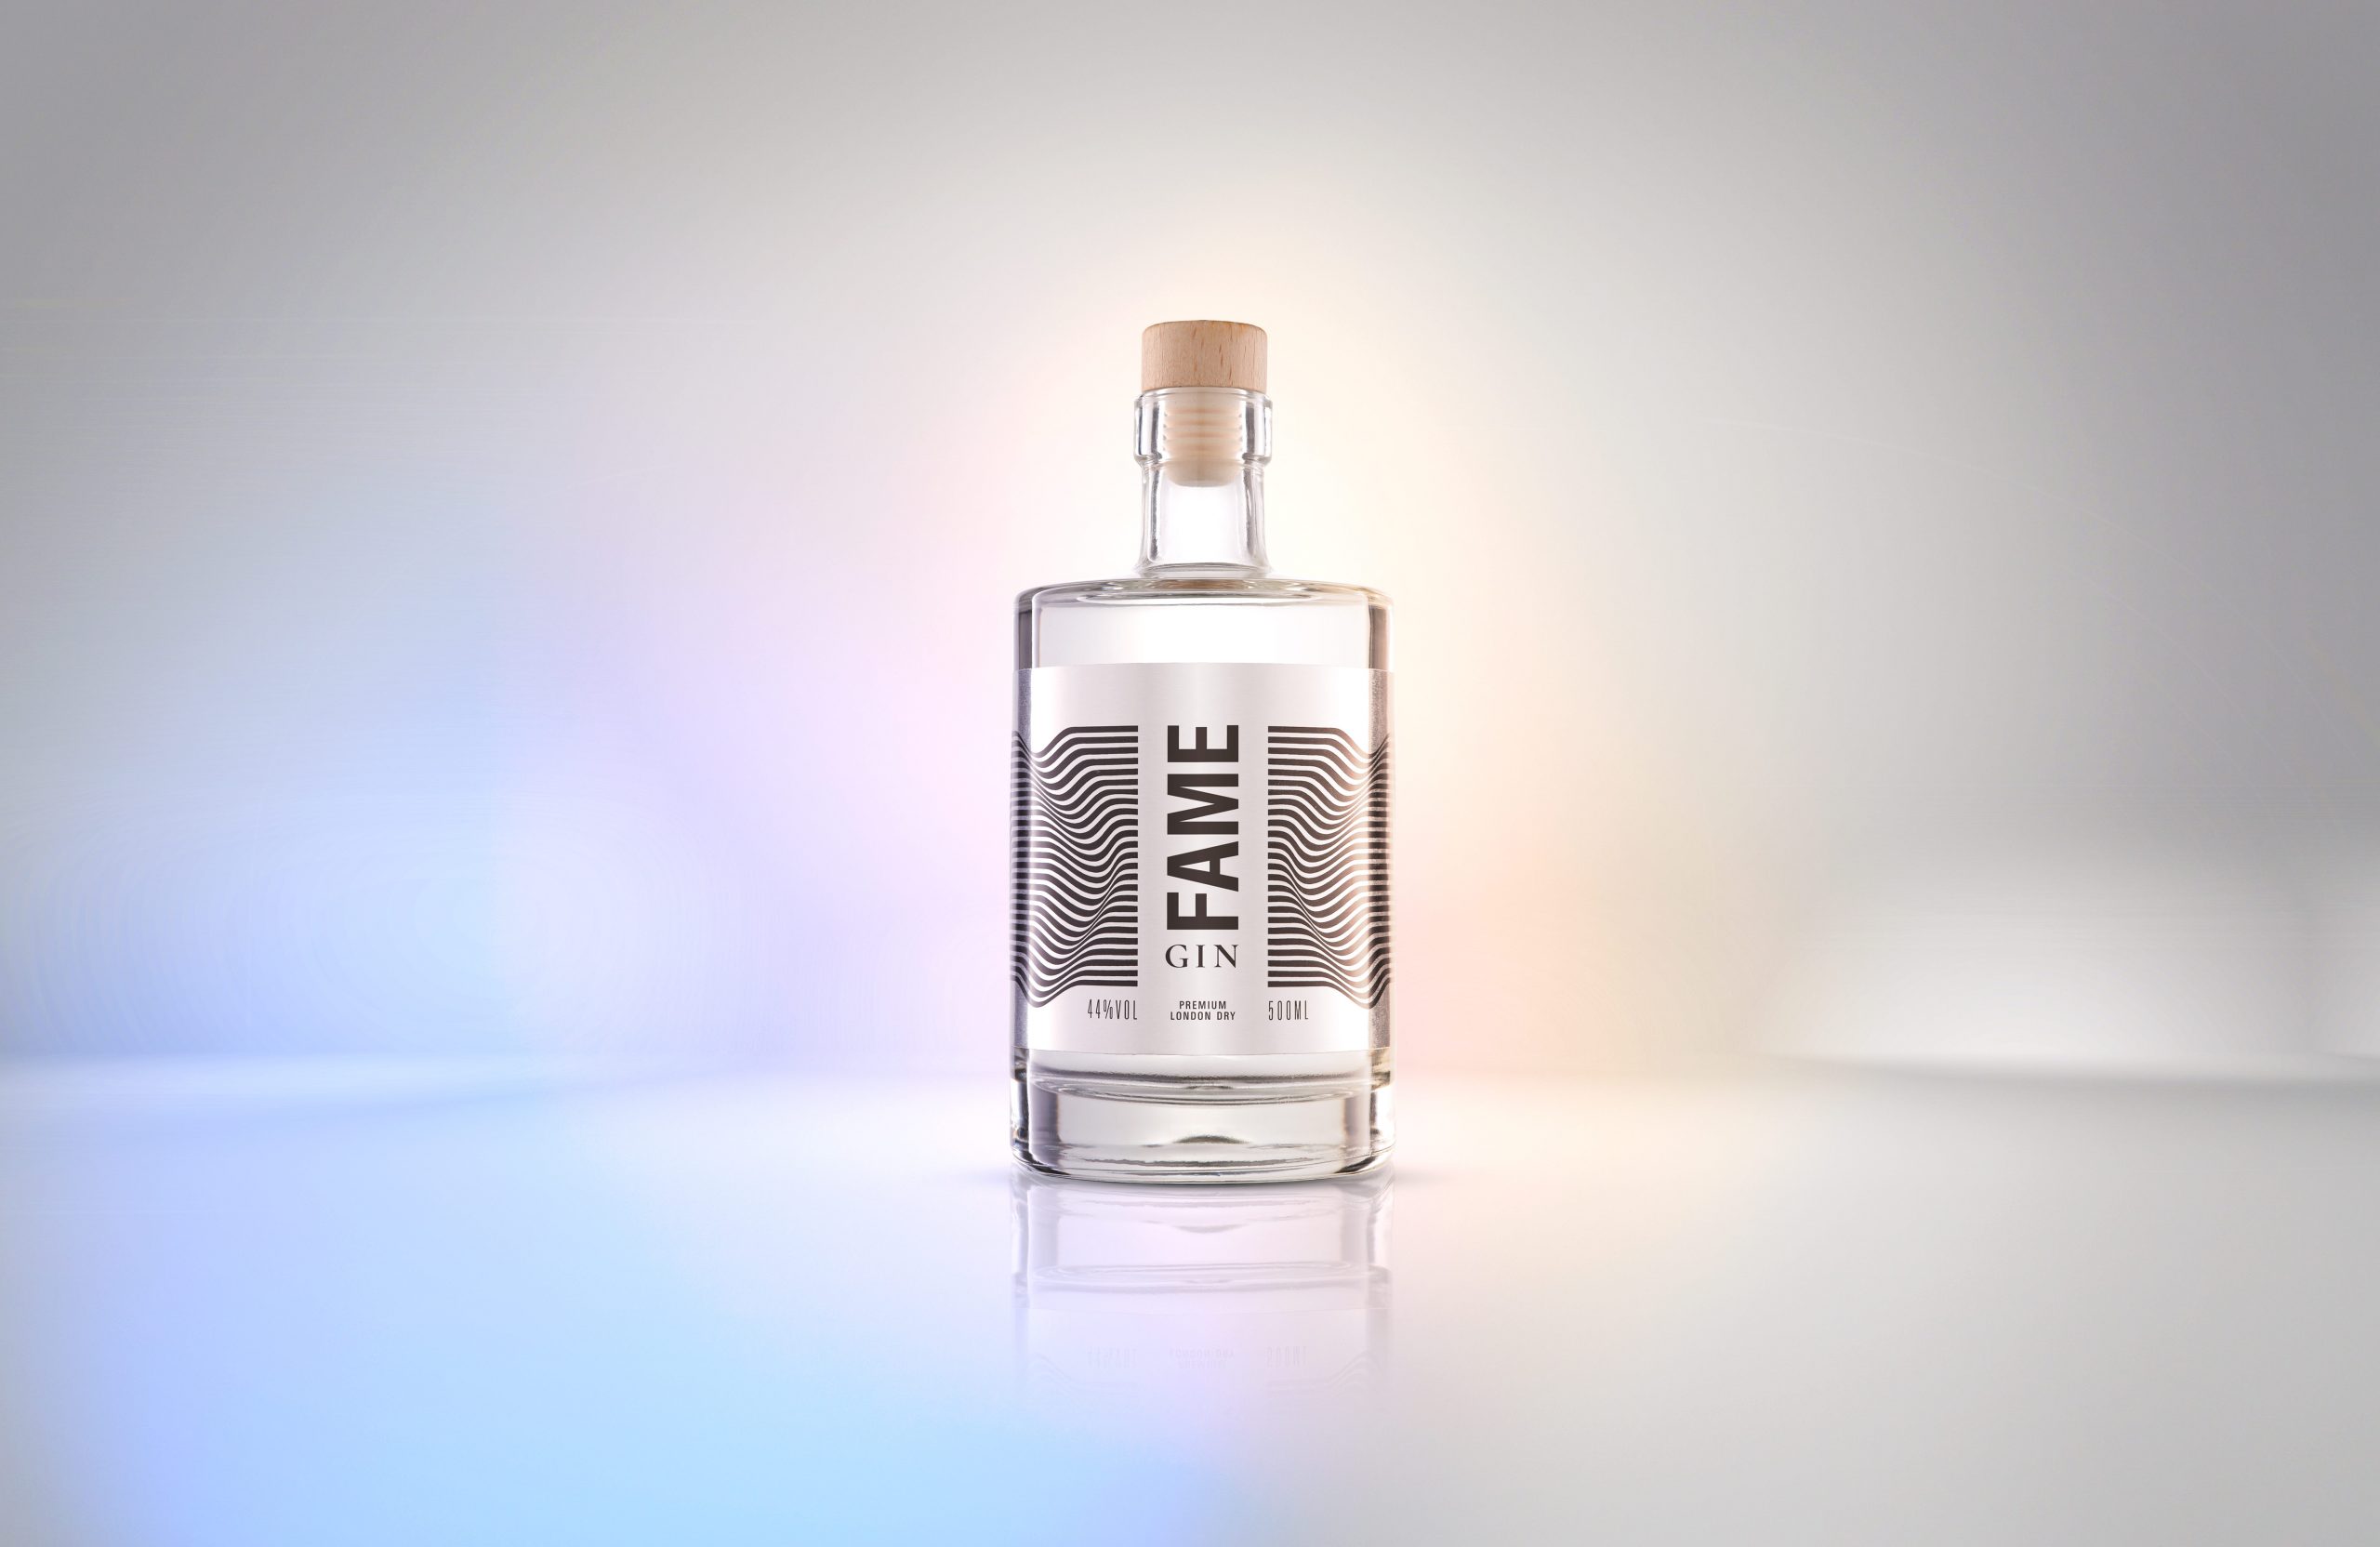 eine Flasche Fame Gin steht in einer virtuellen Welt mit Regenbogenfarben.